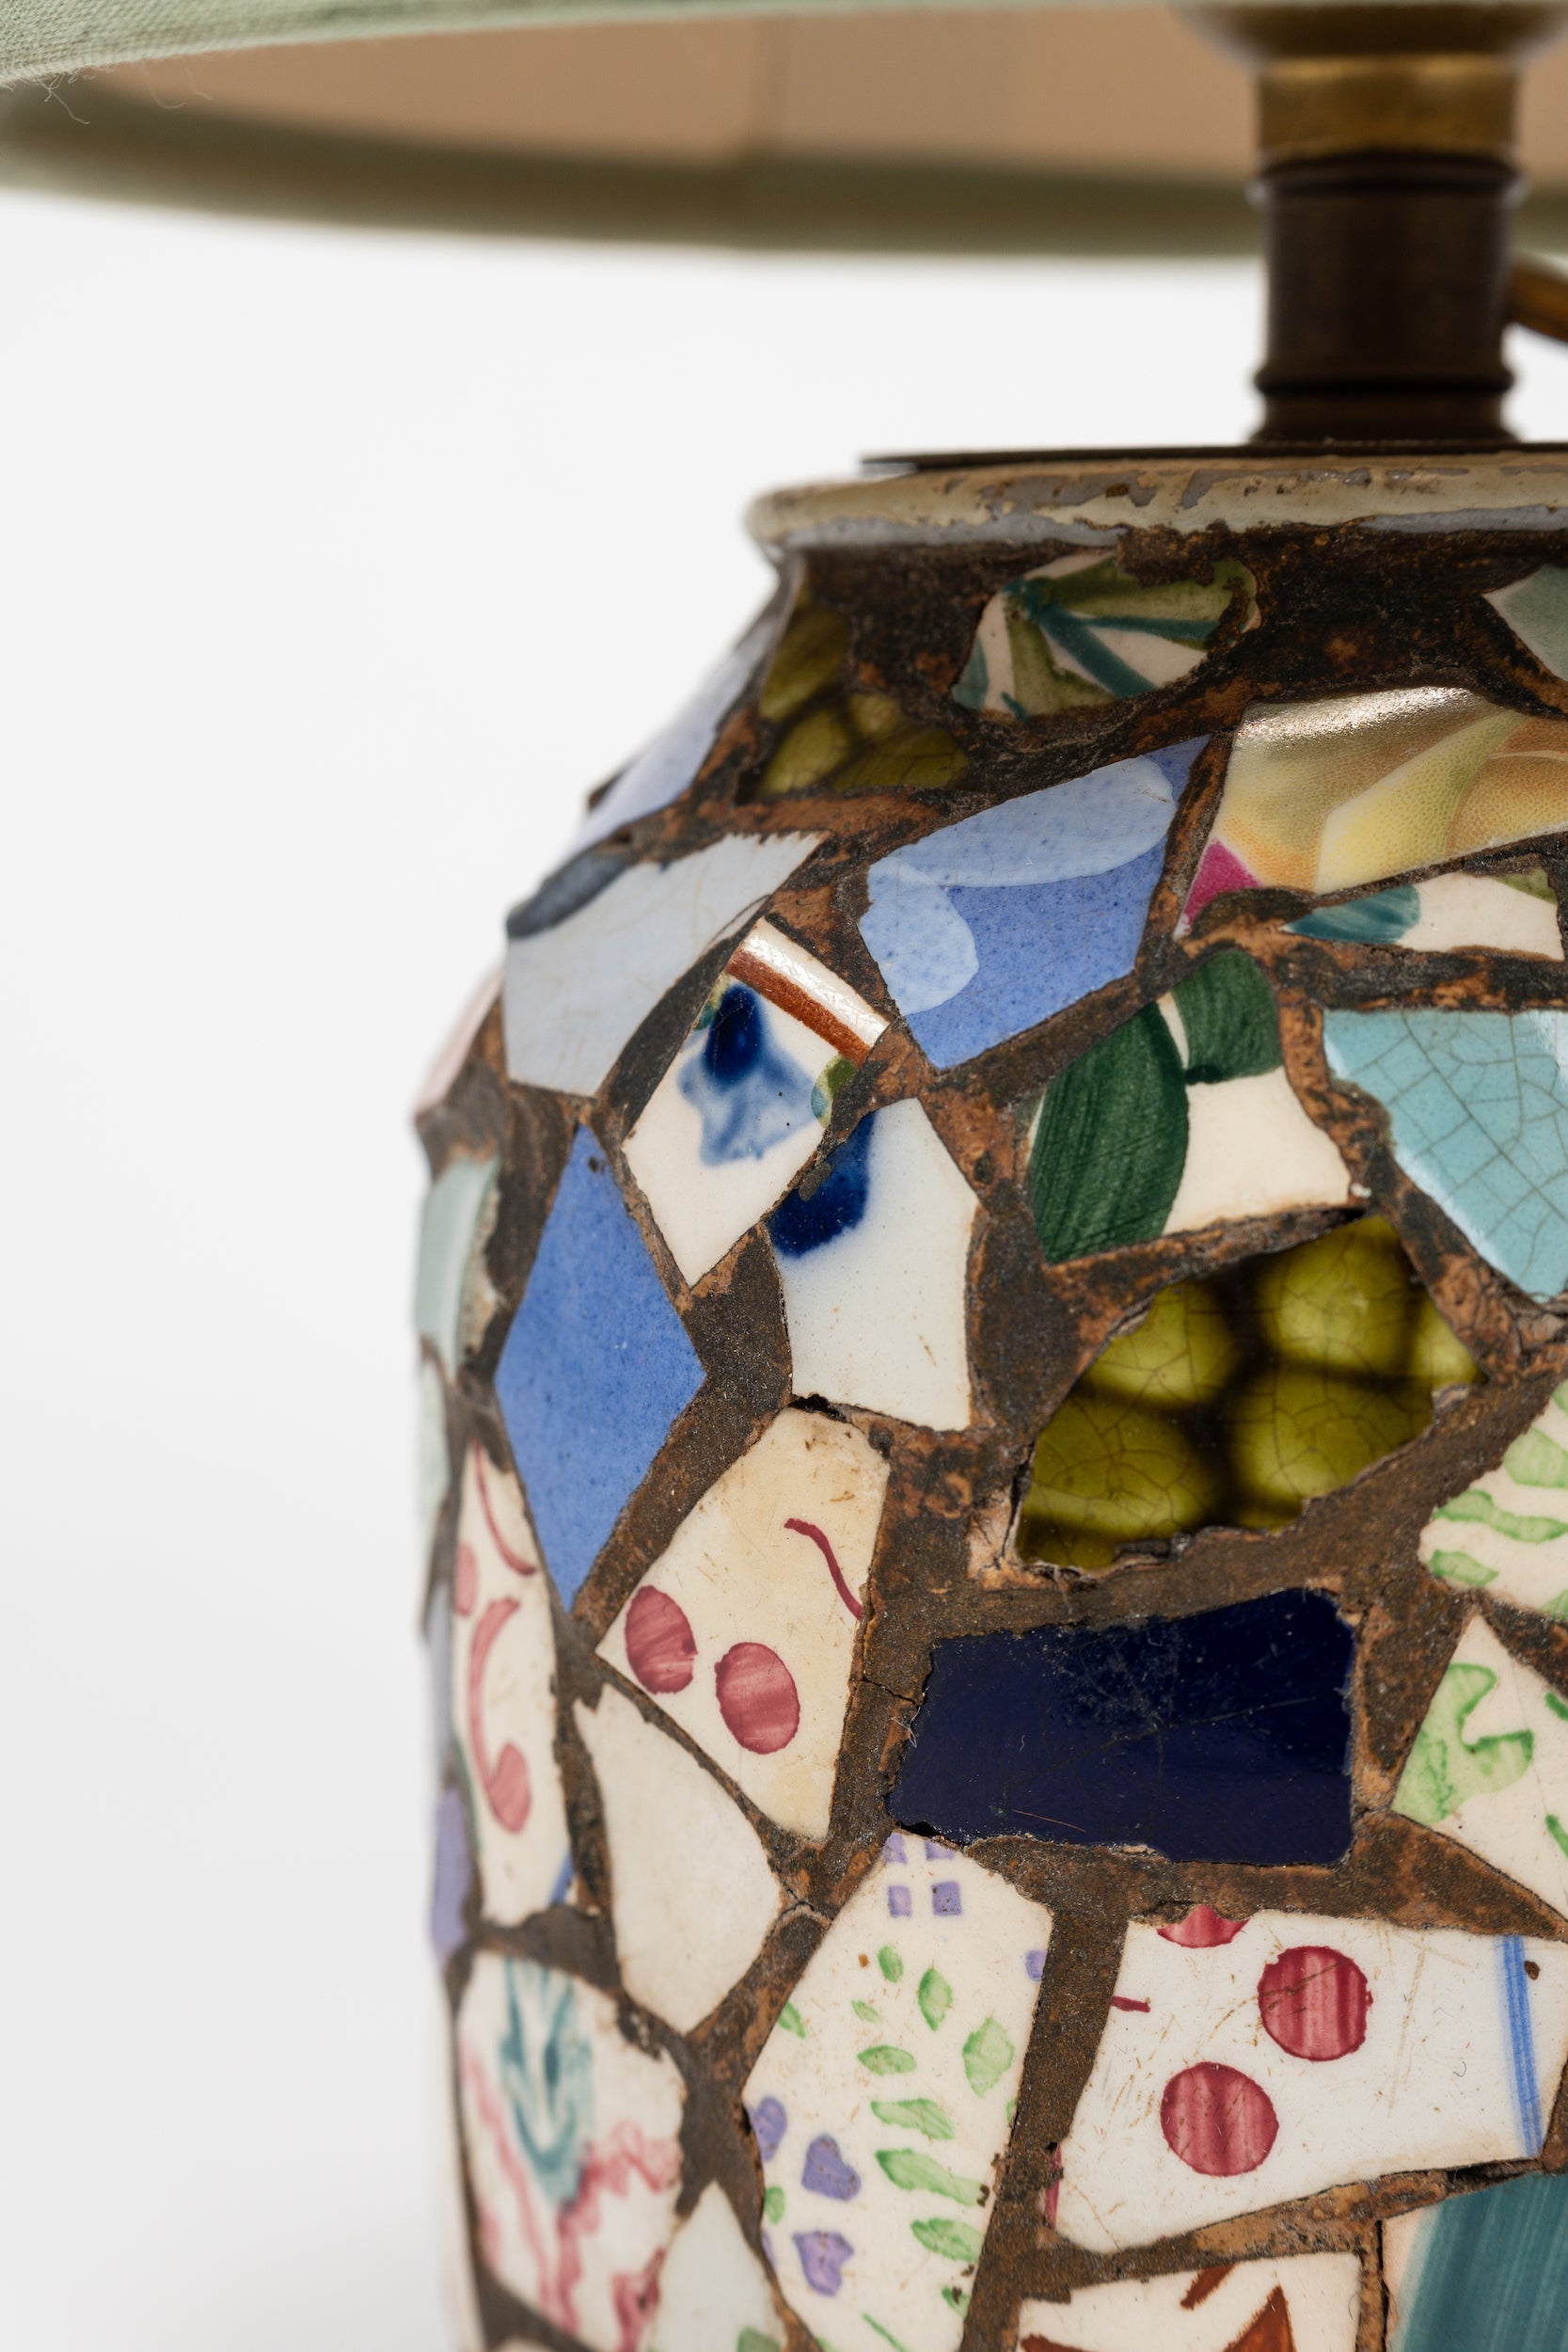 Paar Lampen mit Mosaik, Frankreich, 50er